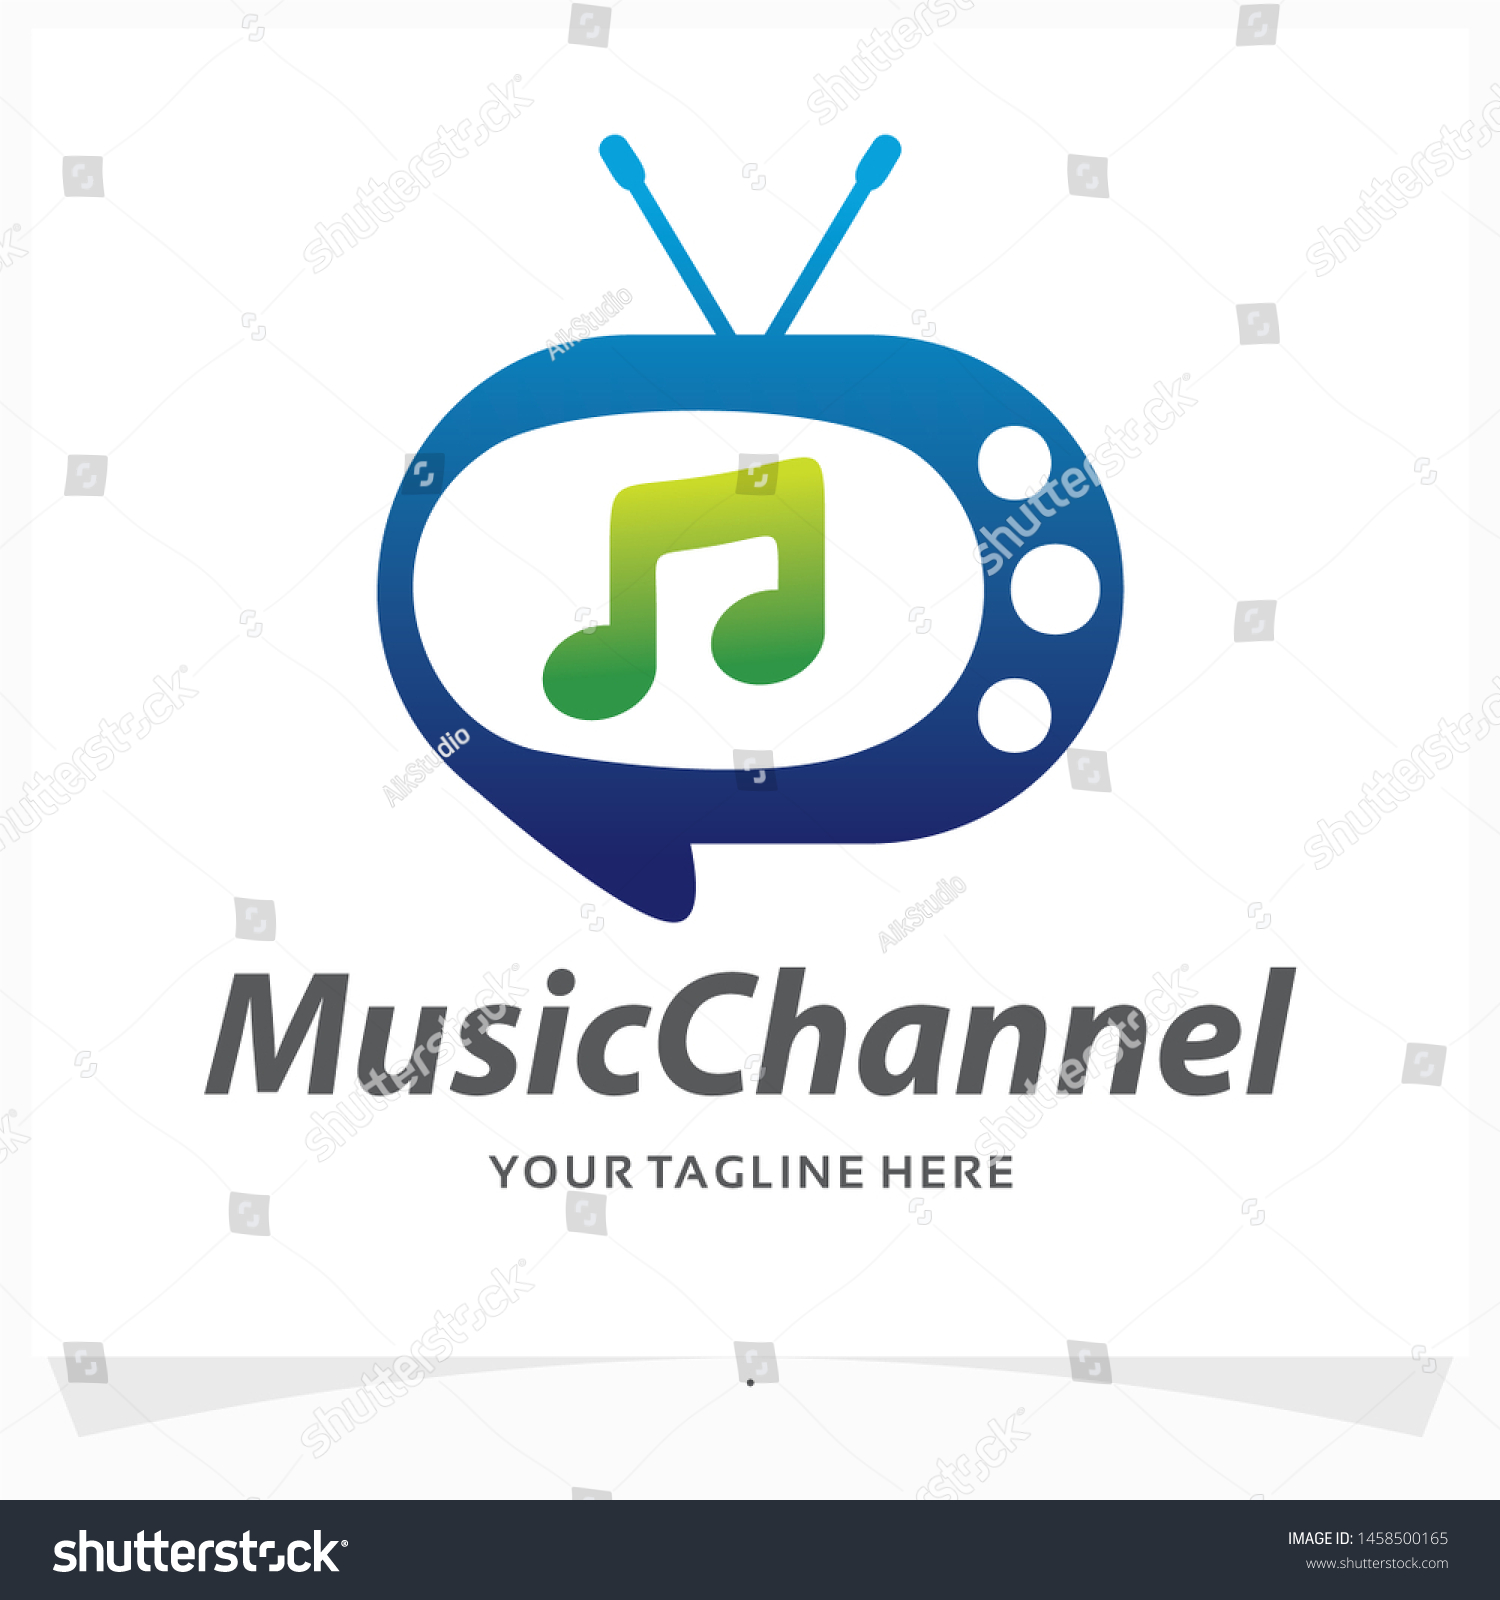 Vector De Stock Libre De Regalias Sobre Music Channel Logo Design Template